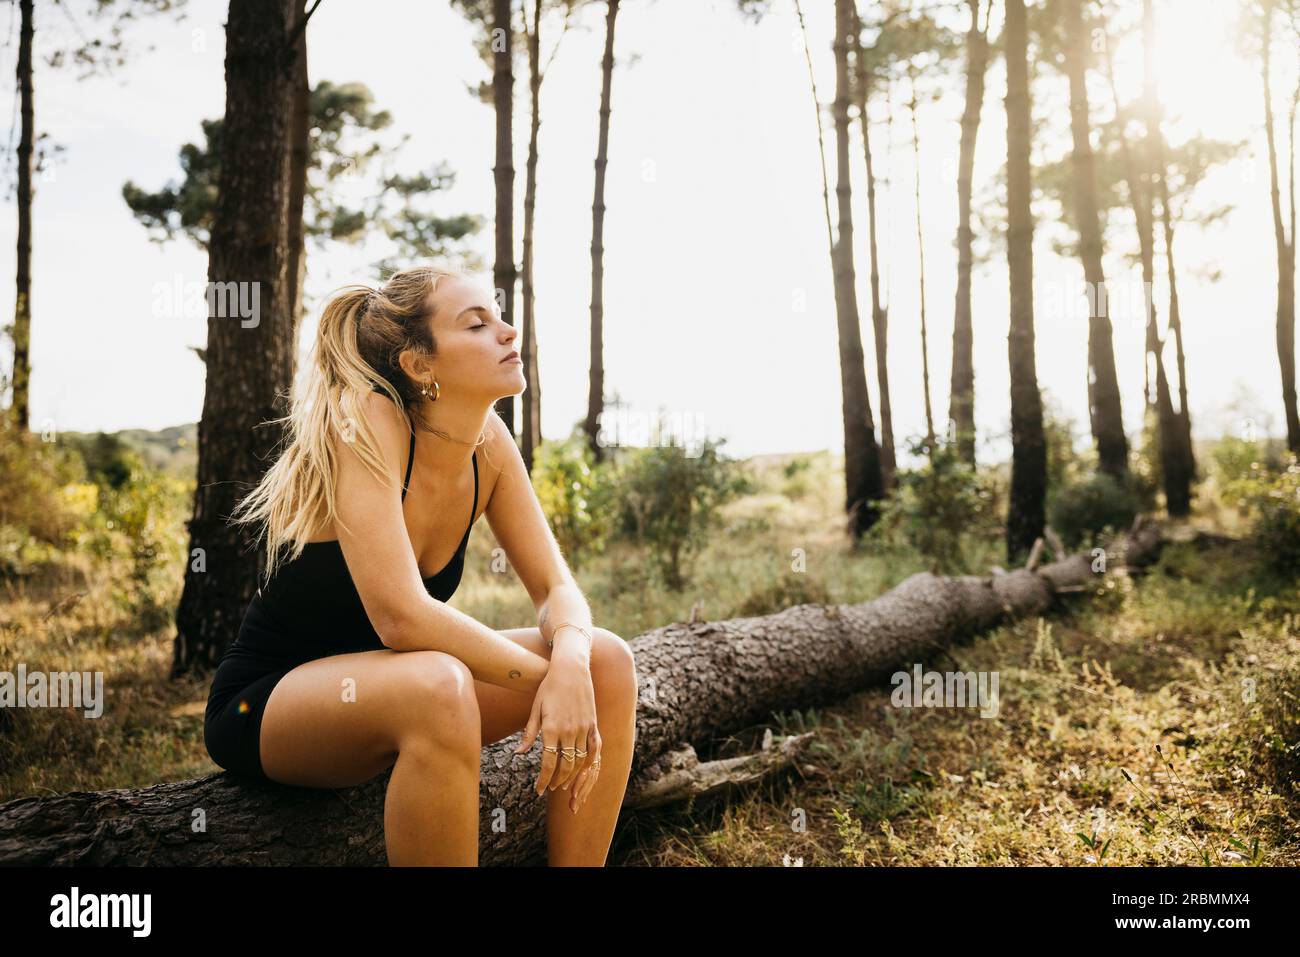 Jeune coureuse féminine s'arrêtant pour un repos sur un tronc d'arbre. Femme de fitness prenant une pause de l'entraînement en plein air dans une forêt. Banque D'Images